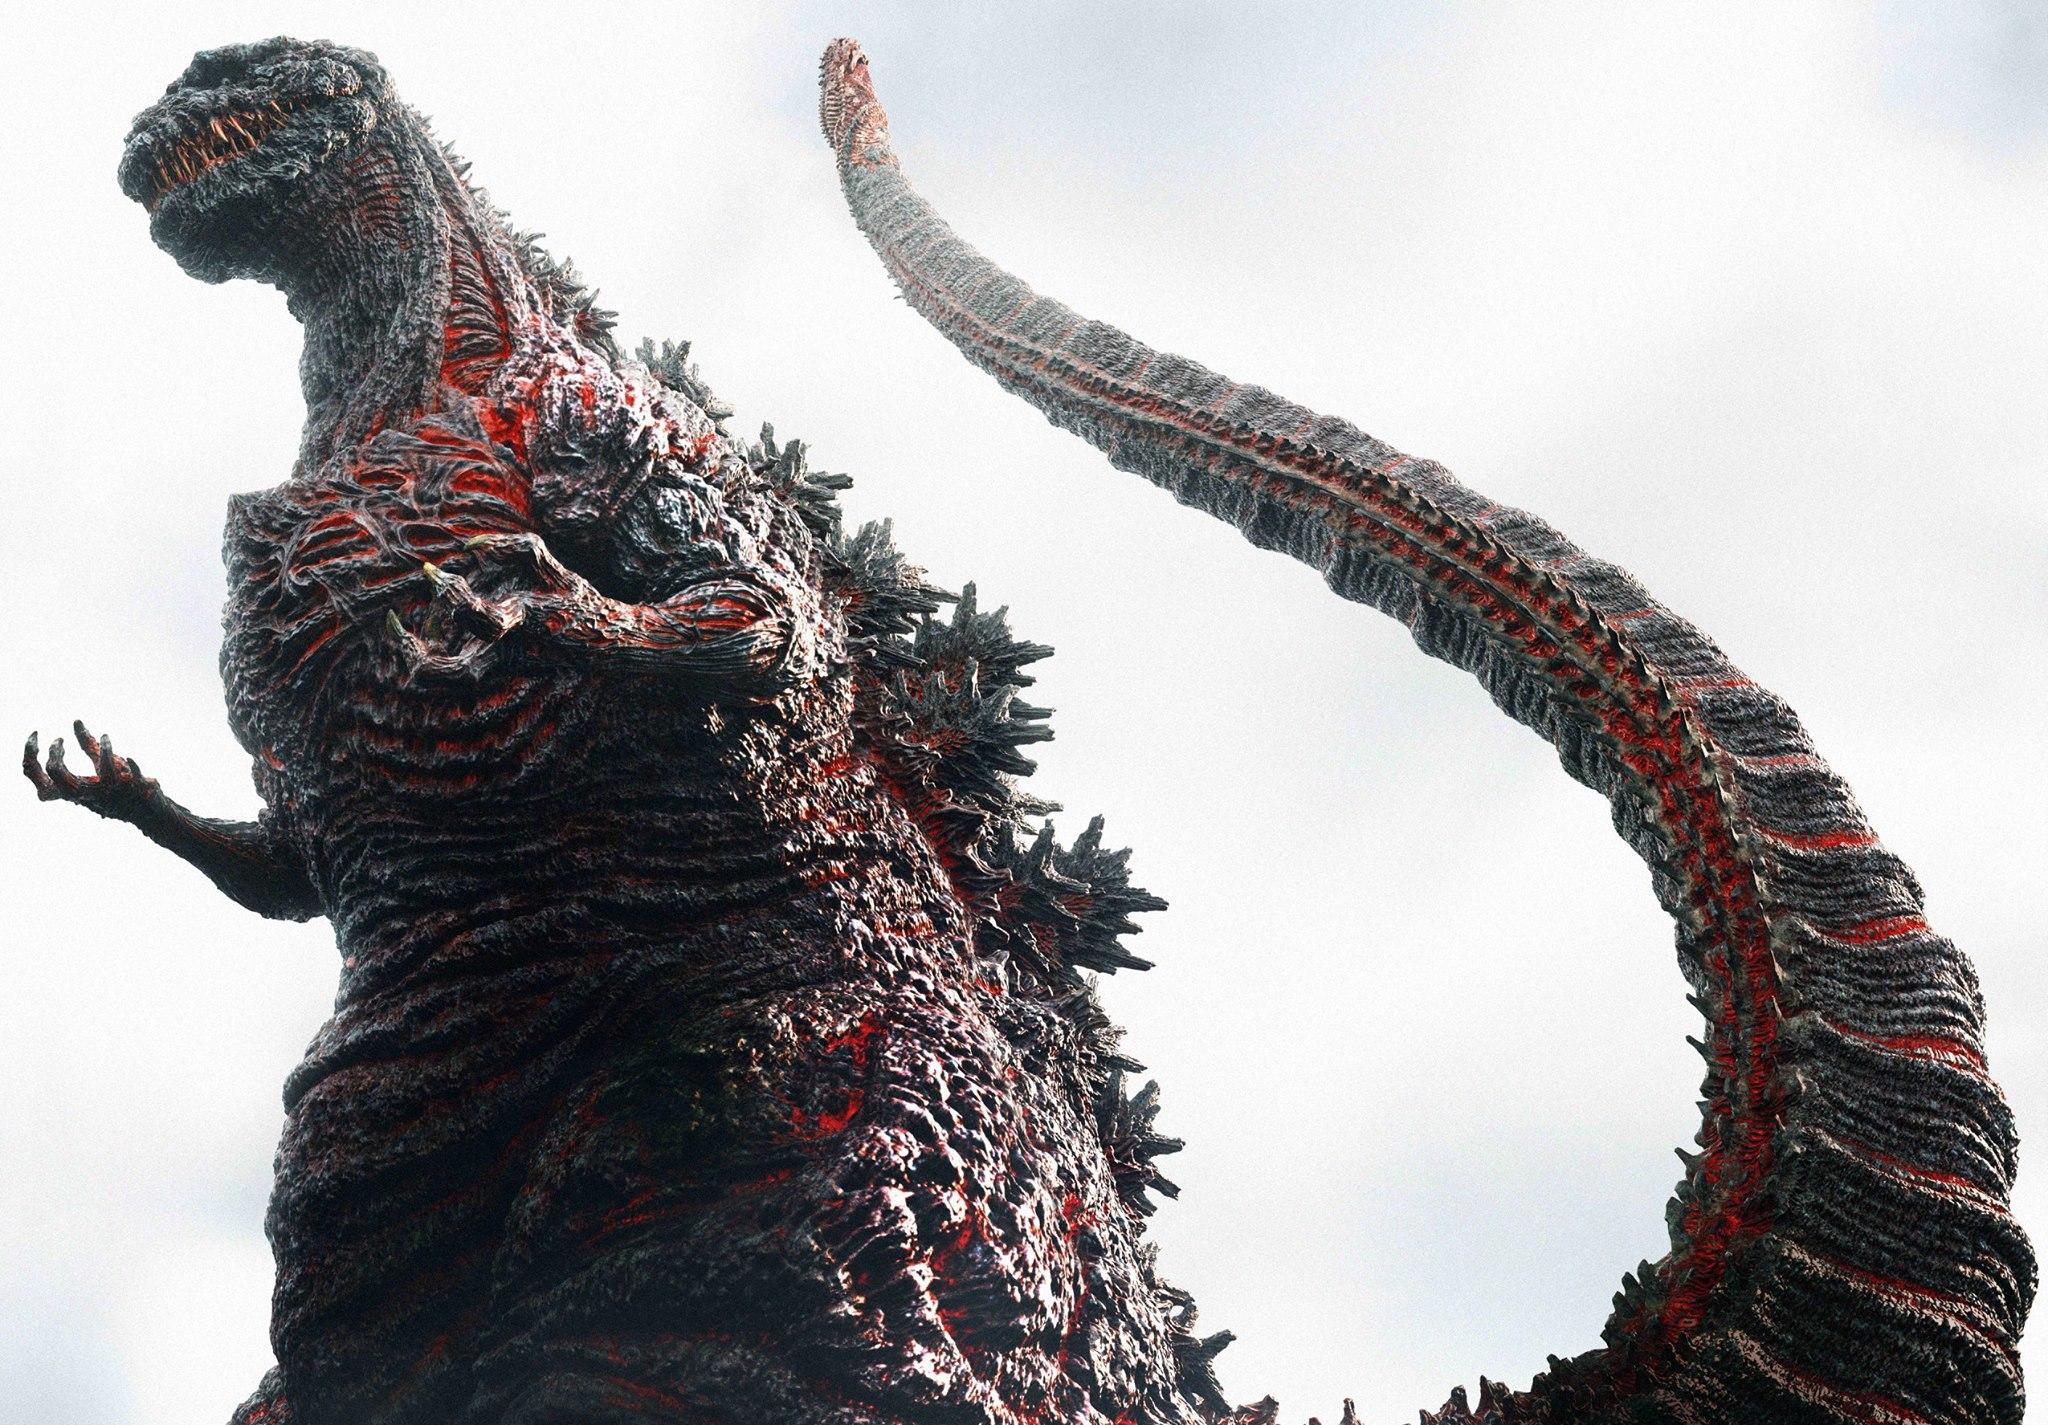 Review: Shin Godzilla Under Grace